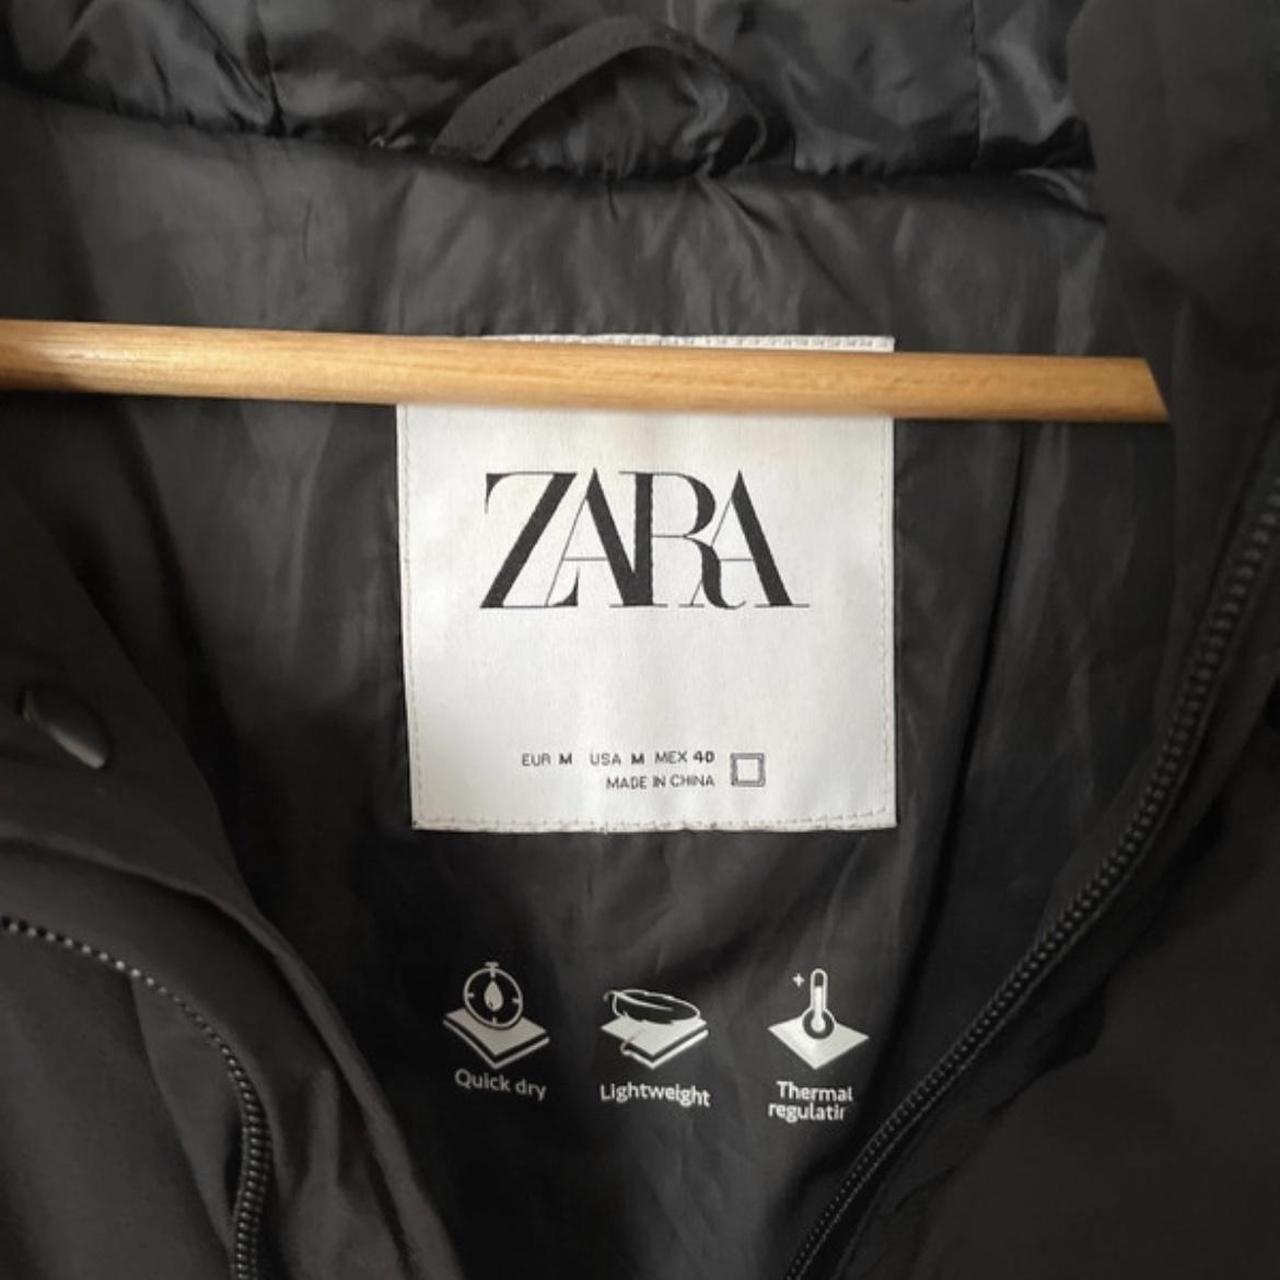 Zara termal black long Parka coat/ jacket, light... - Depop